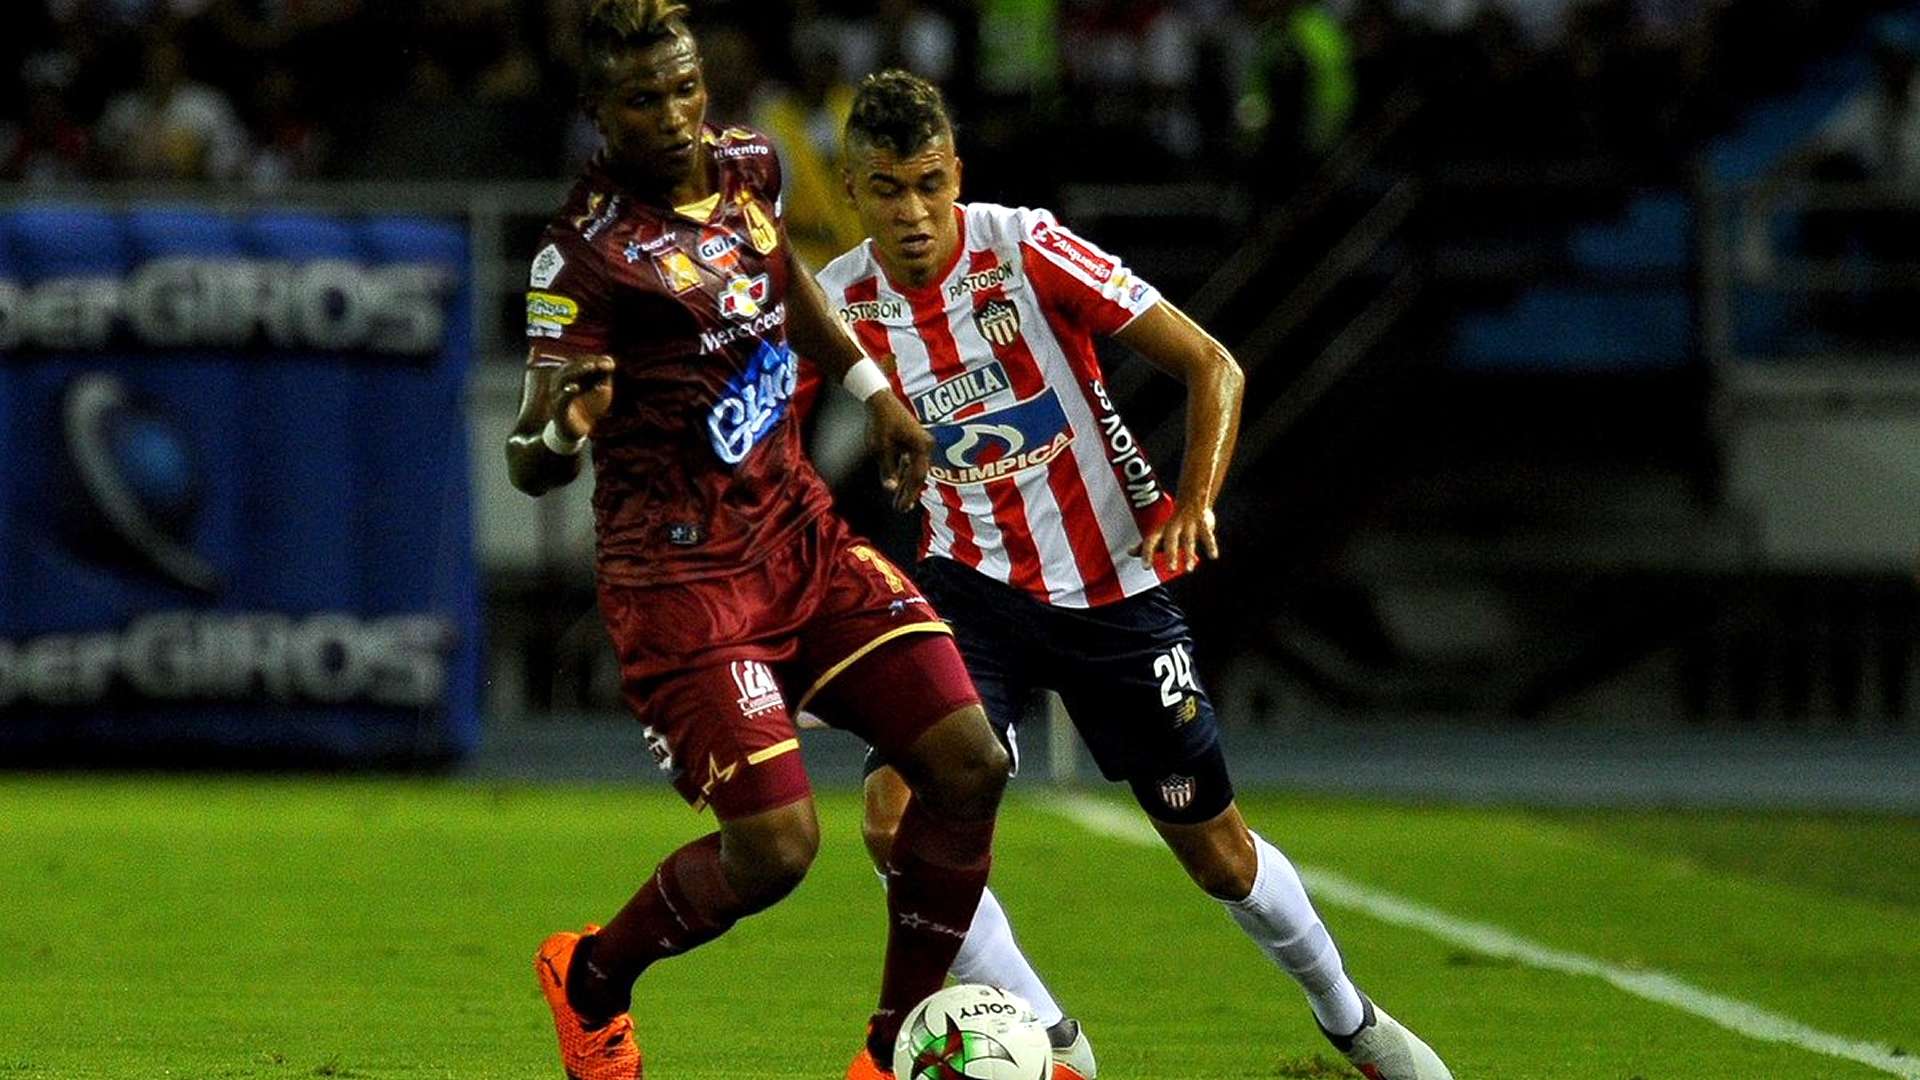 Junior Tolima Superliga 2019